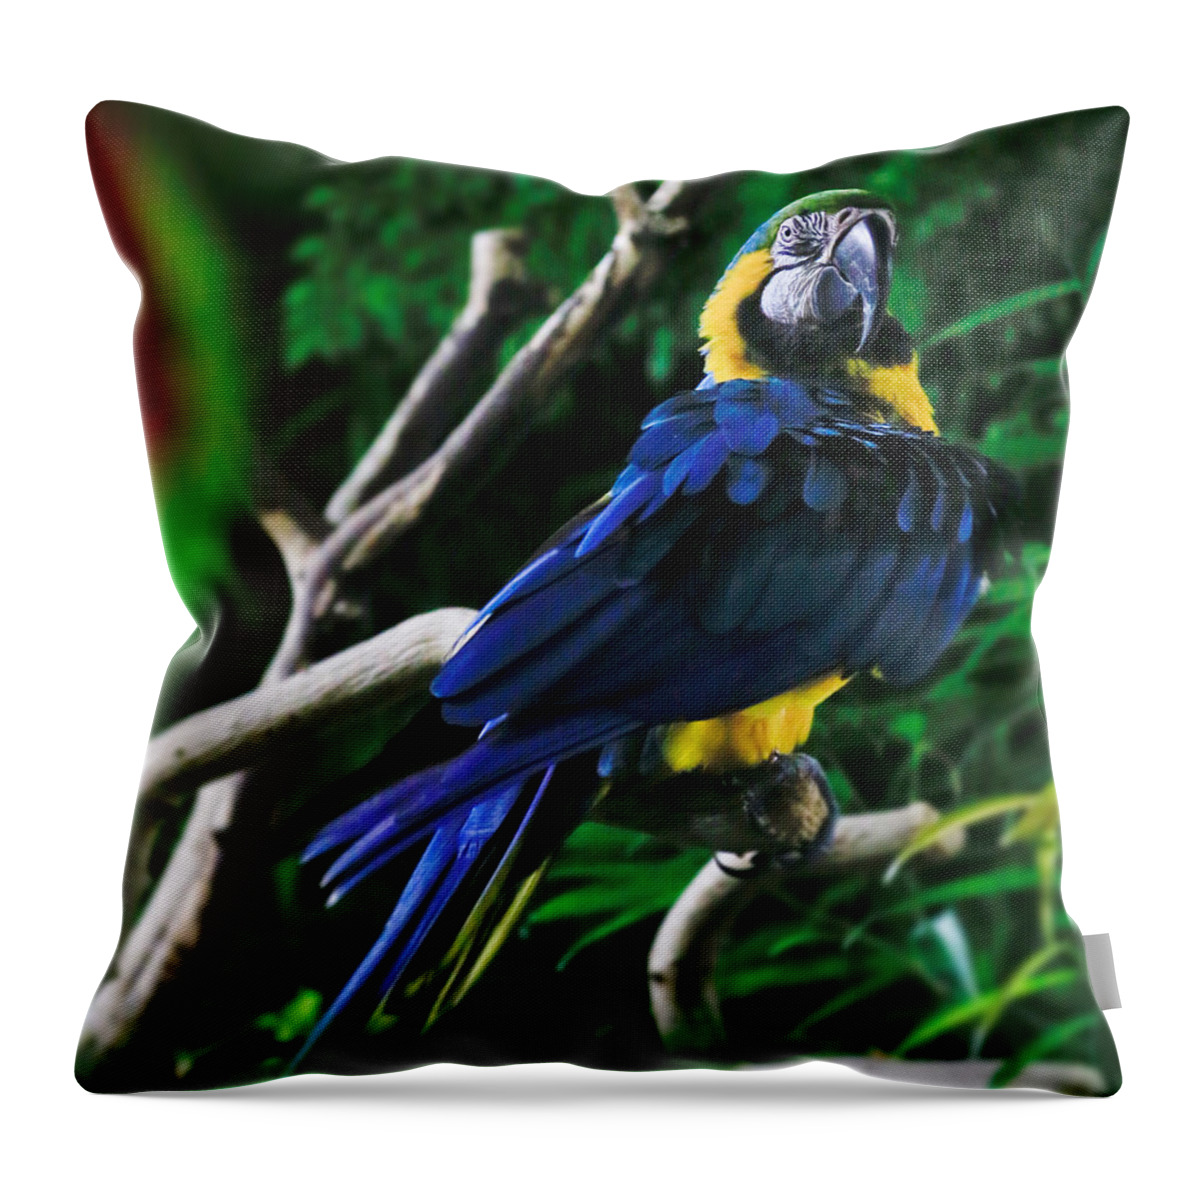 Parrot Throw Pillow featuring the photograph Bird 3 #1 by Carol Jorgensen